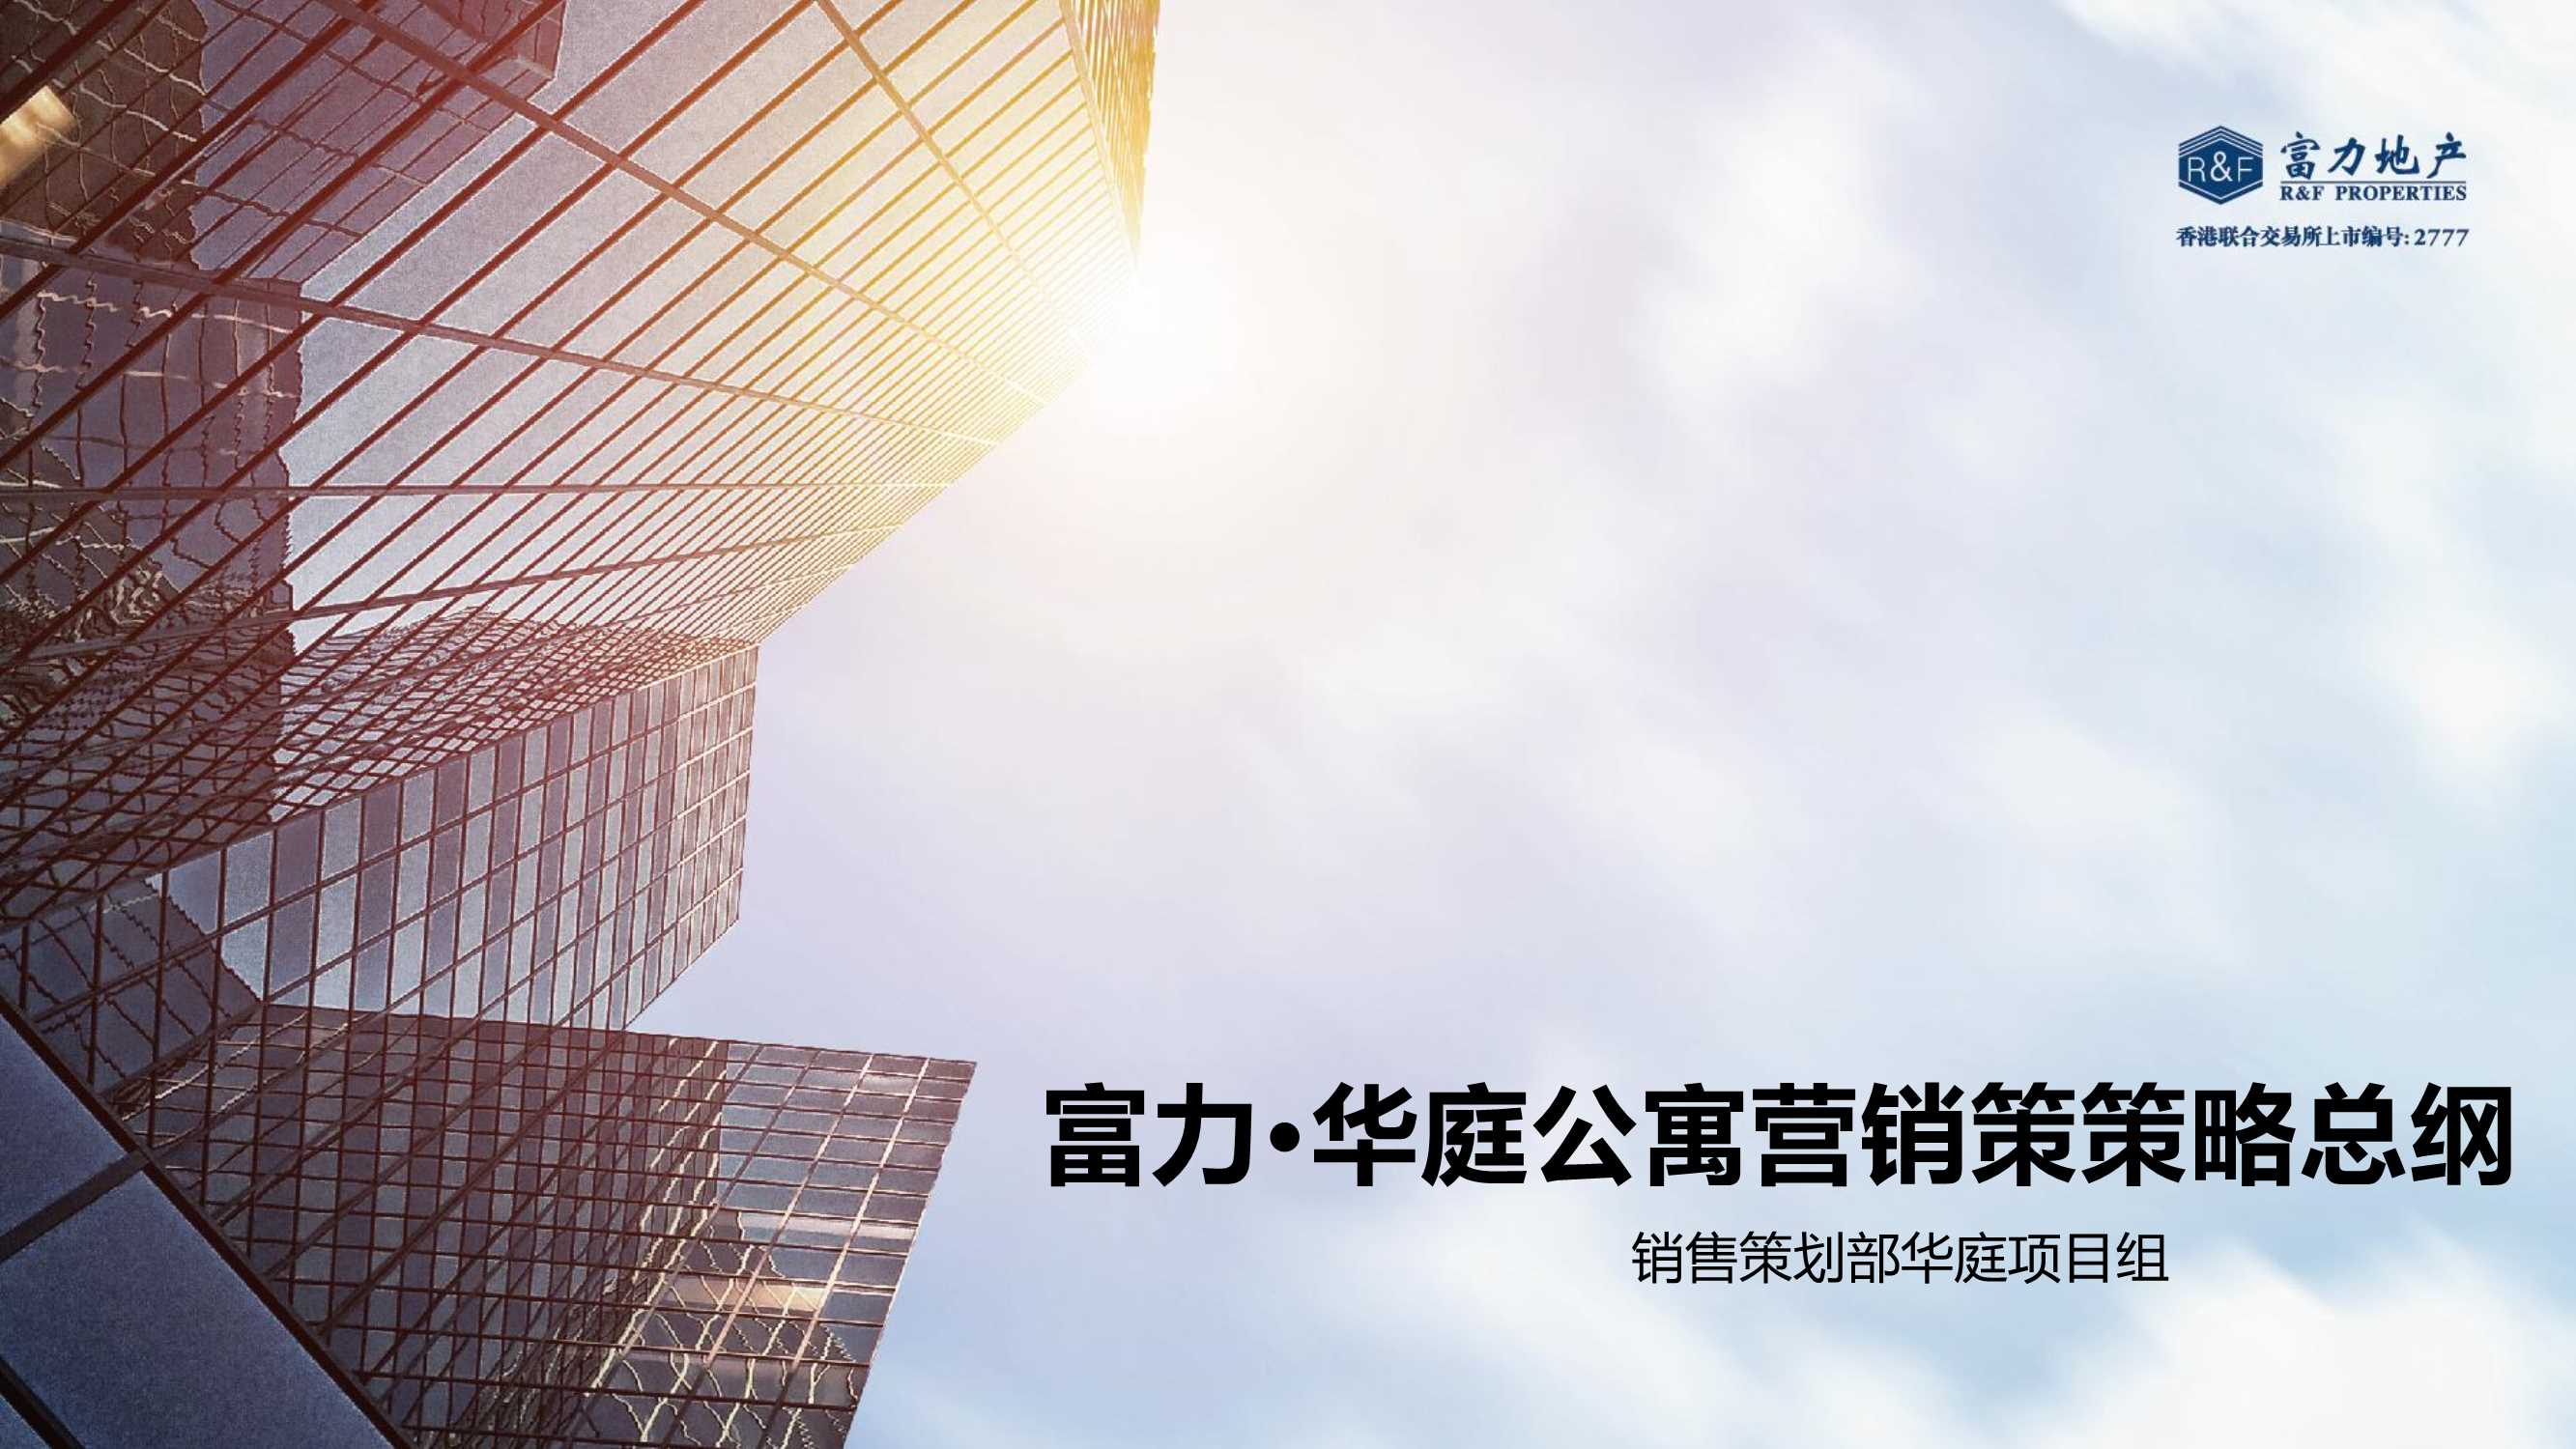 同策集团-南昌富力华庭公寓营销策略报告10.15【pdf】